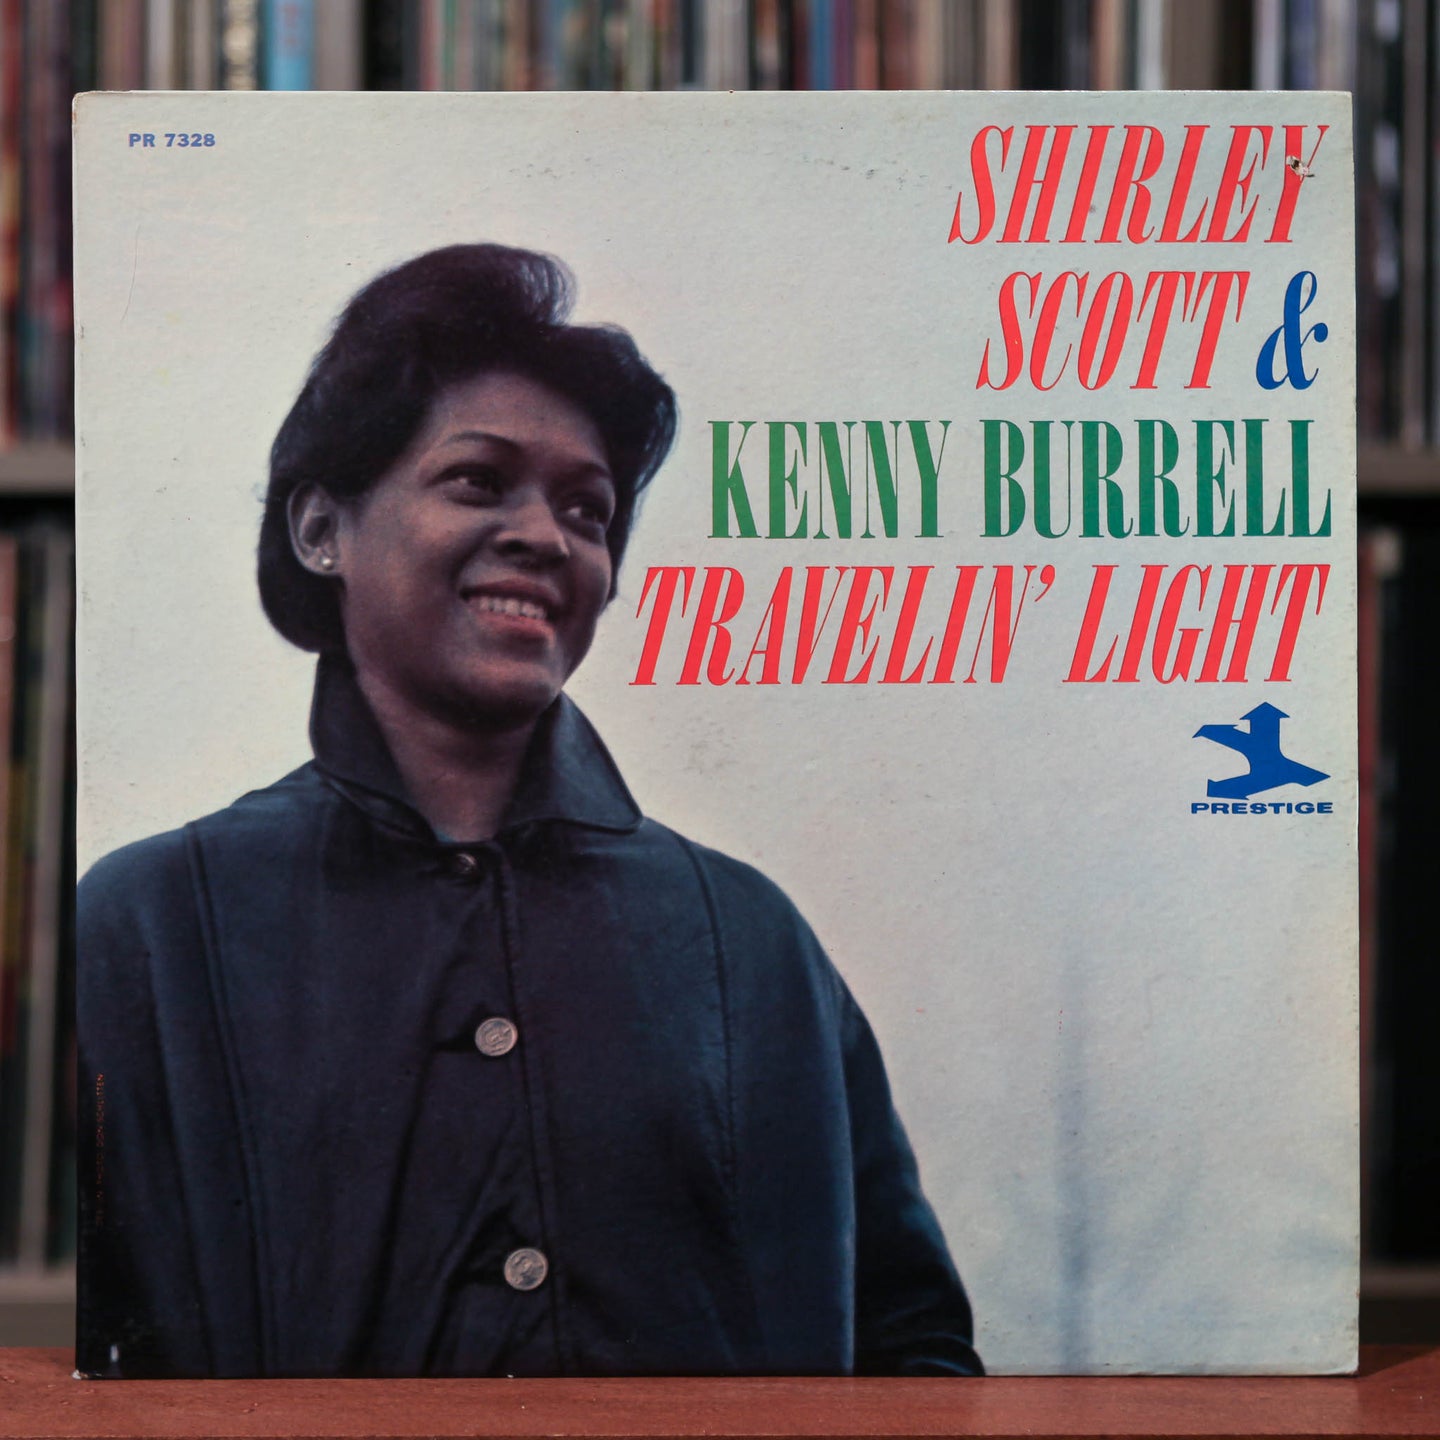 Shirley Scott & Kenny Burrell - Travelin' Light - Mono - 1964 Prestige, VG++/VG++